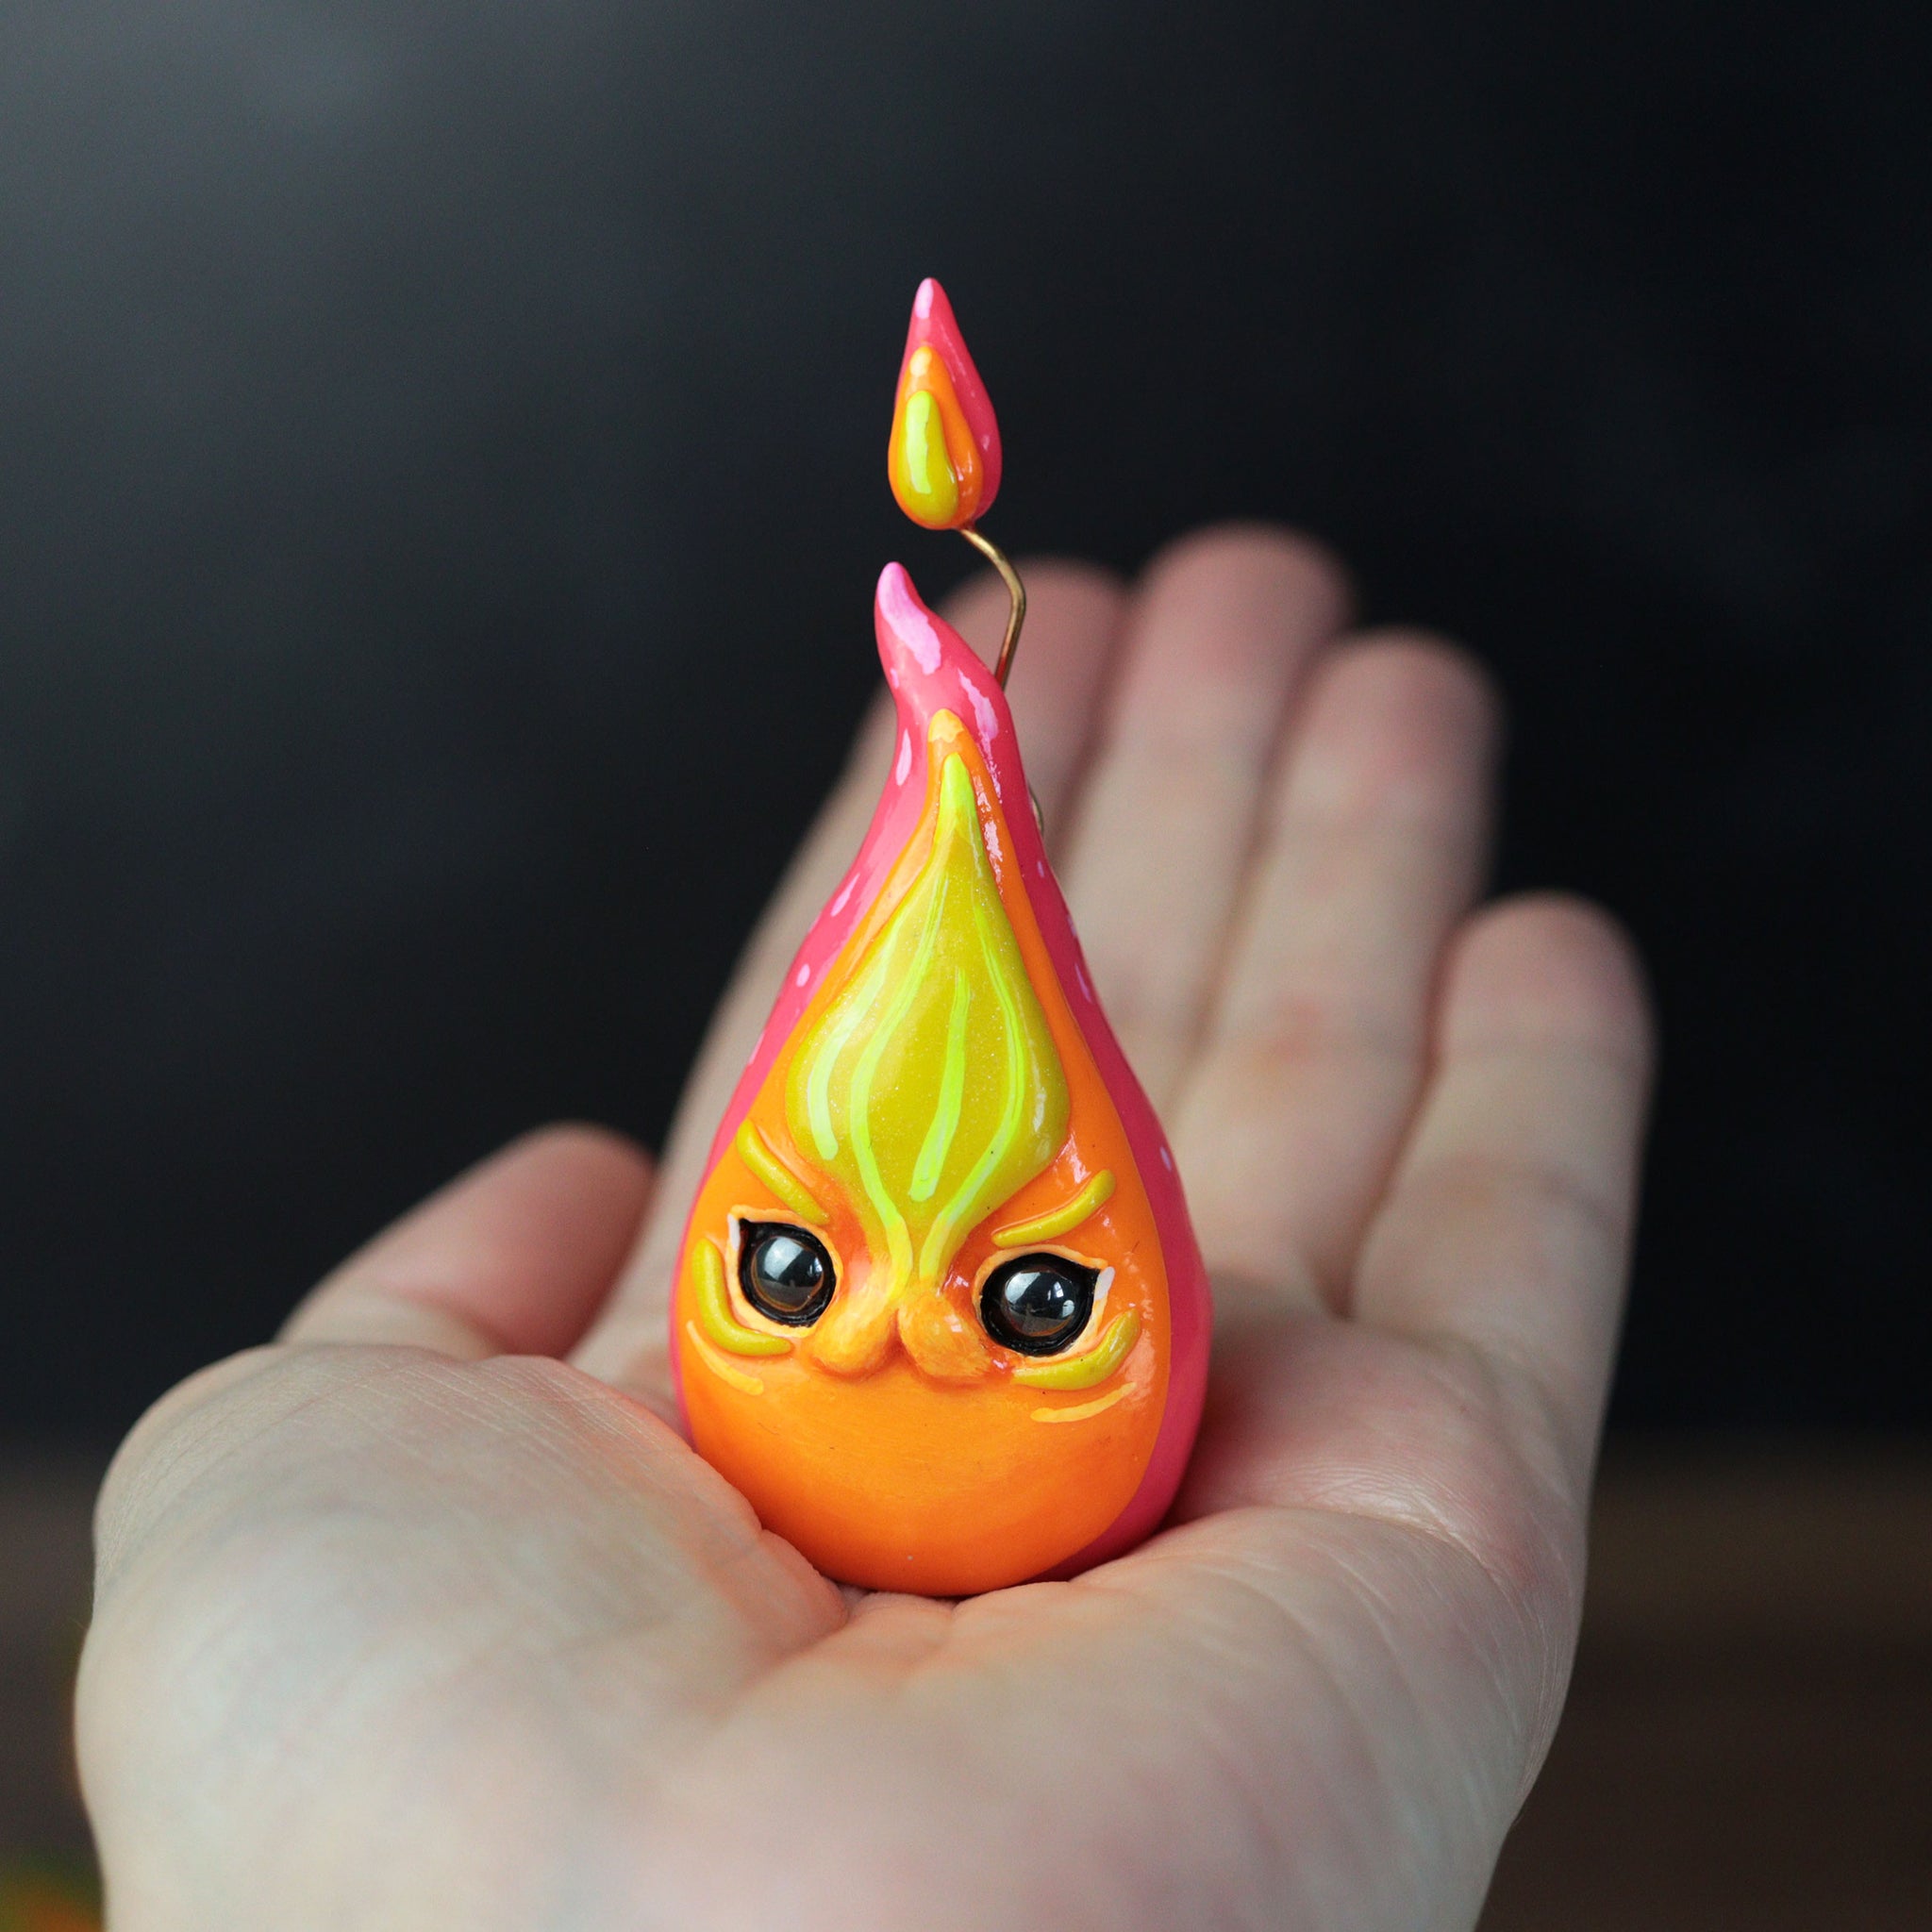 Simple Cat Flame Figurine